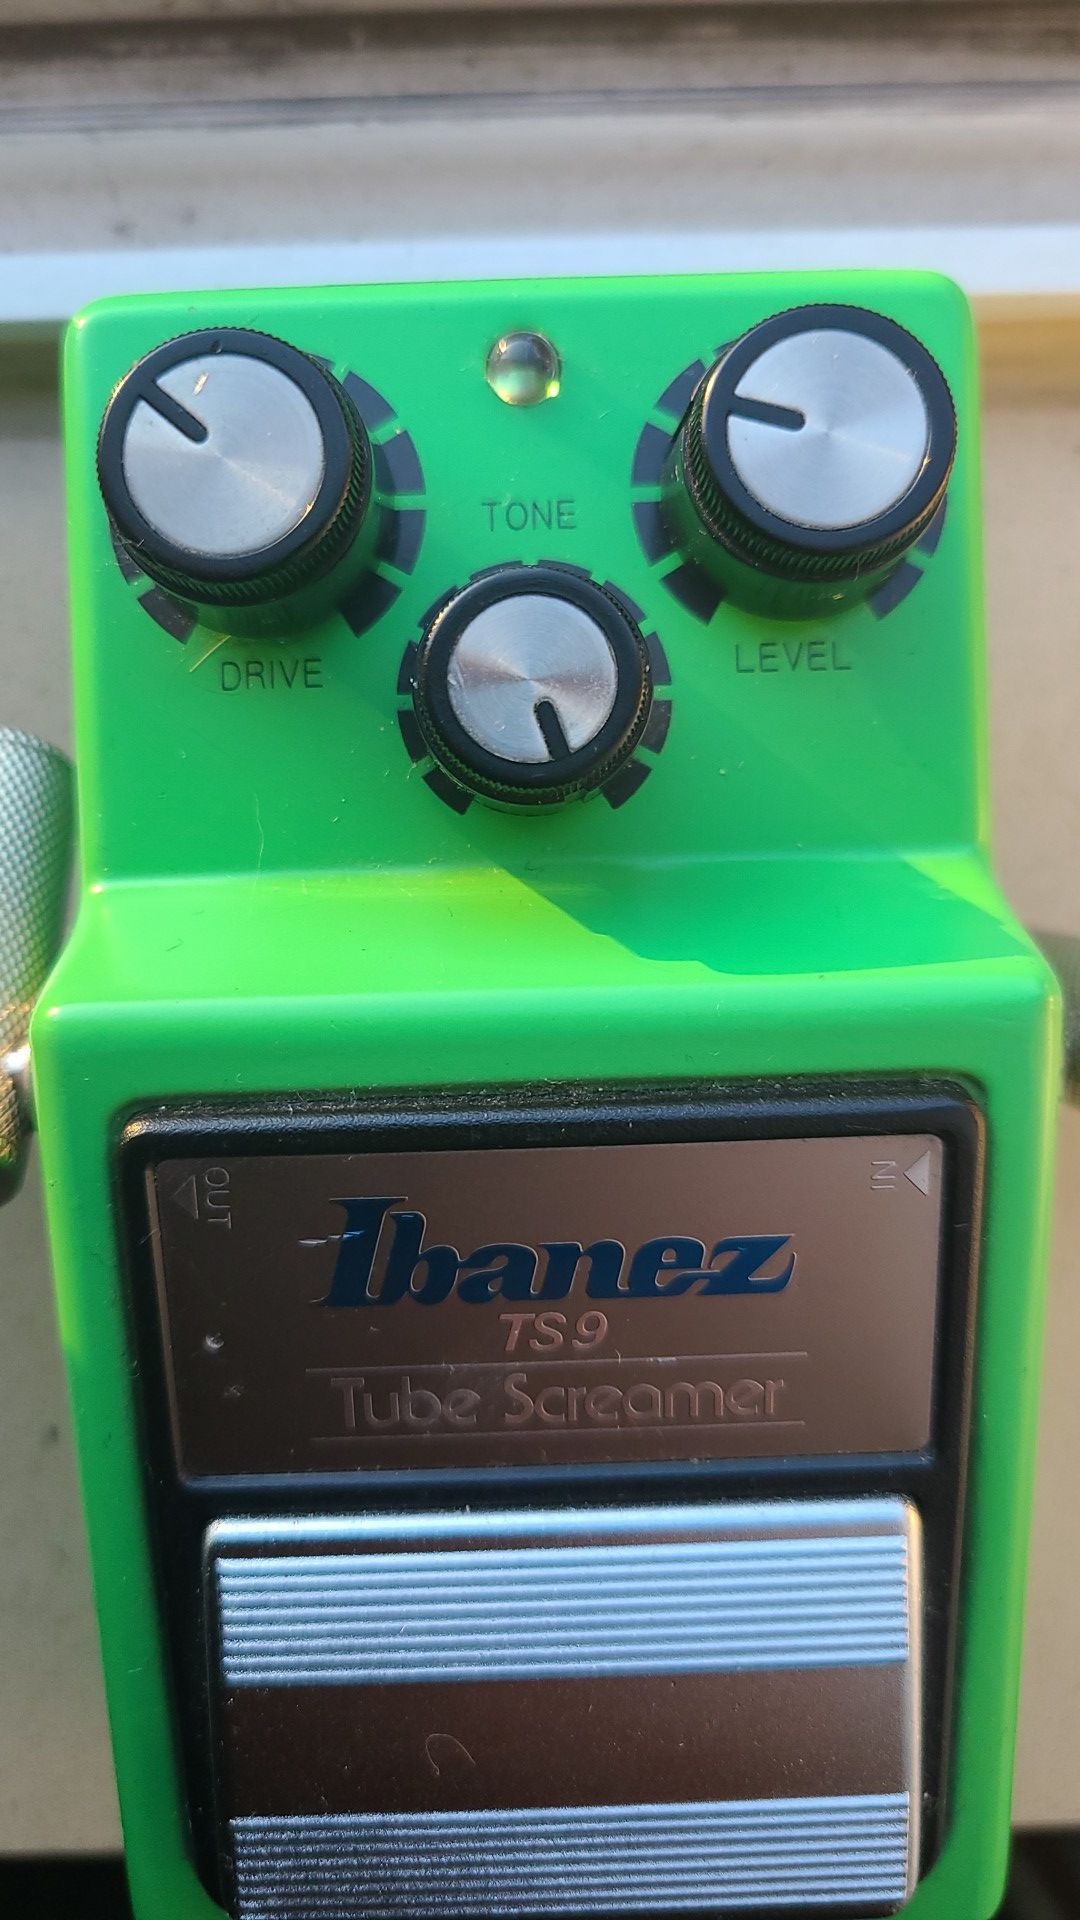 Ibanez ts9 tube screamer